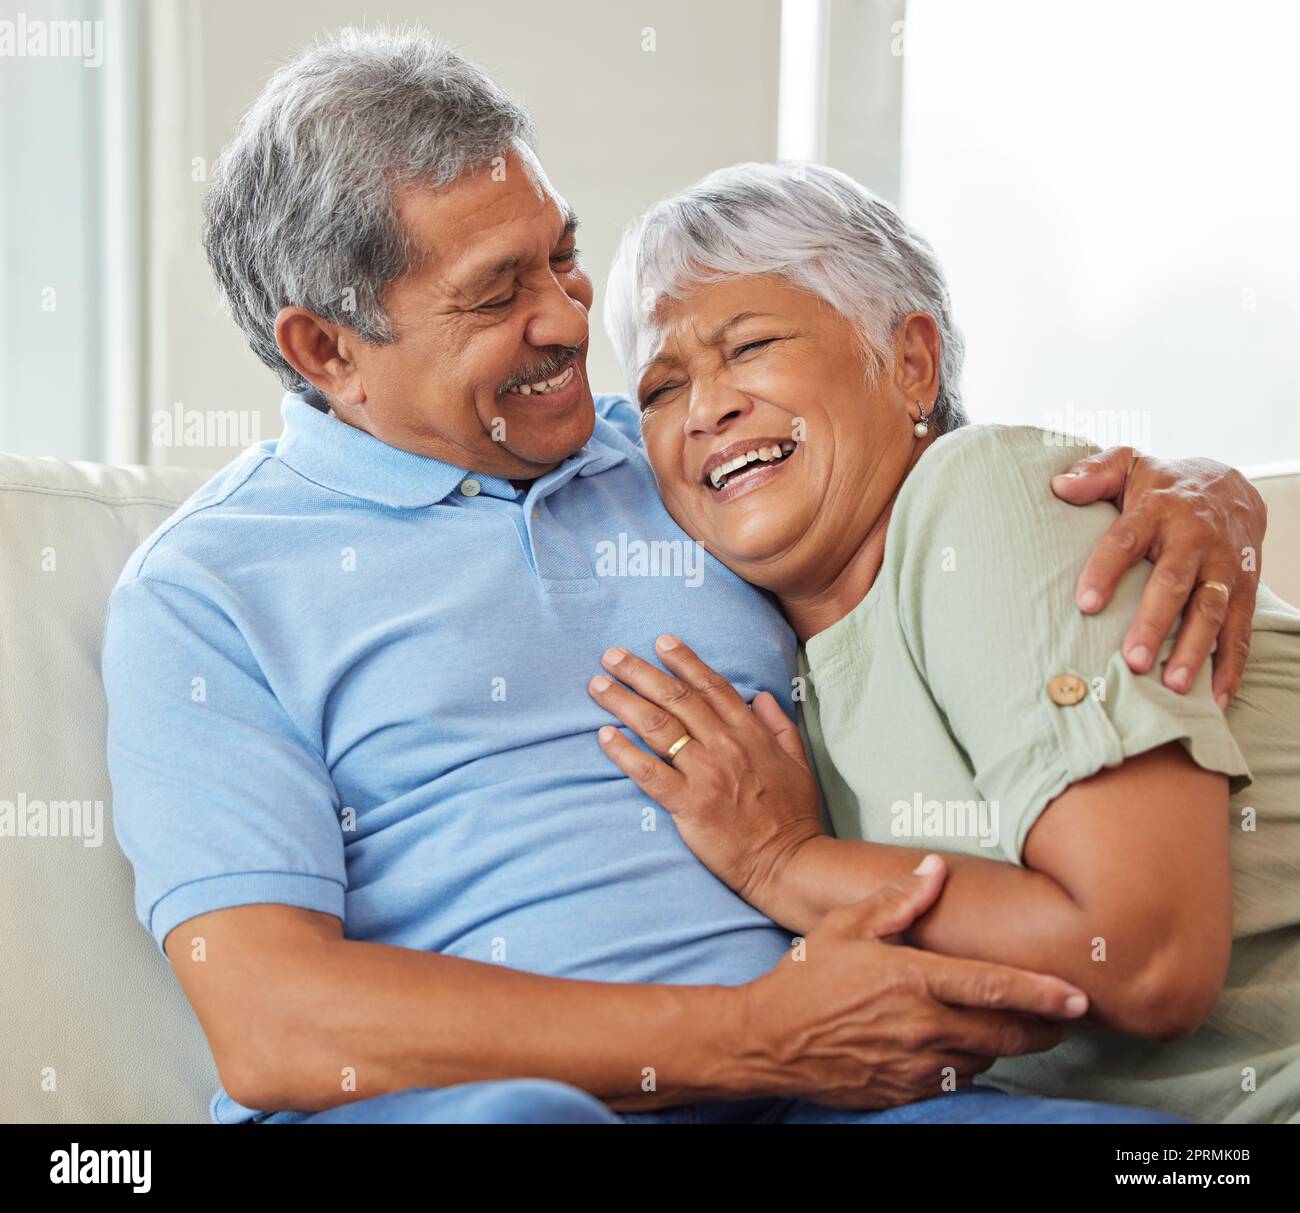 Liebe, Fürsorge und glückliches Seniorenpaar, das sich umarmt, während es sich zu Hause auf dem Sofa verbindet und entspannt. Ältere Männer und Frauen, die auf einer Couch im Wohnzimmer sitzen und umarmen, reden und lachen. Stockfoto